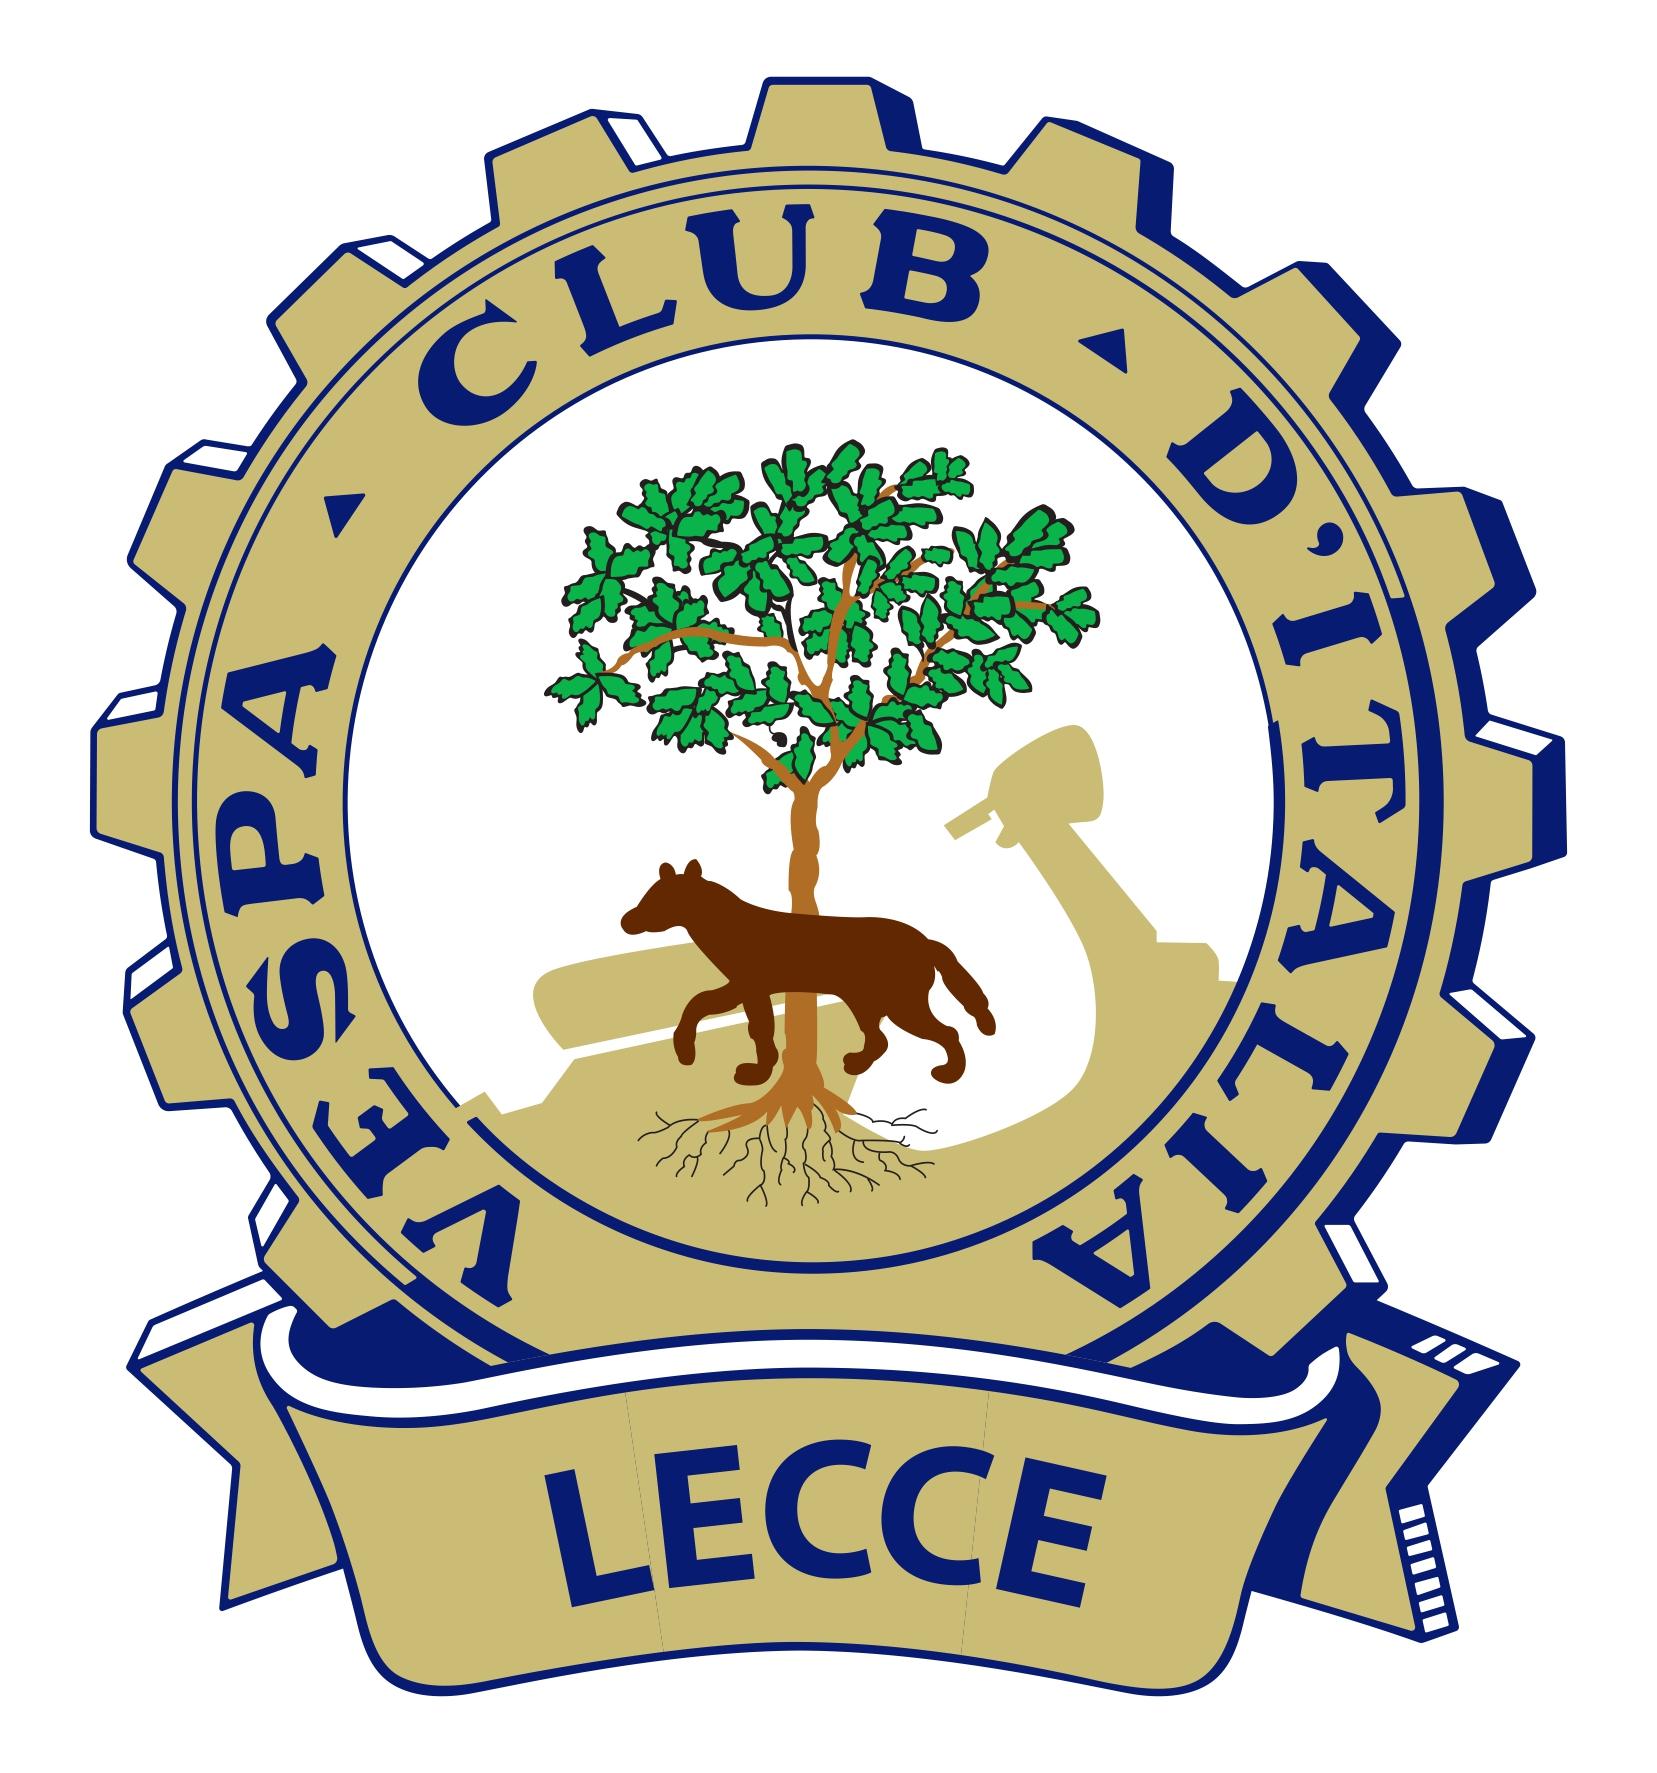 Vespa club Lecce